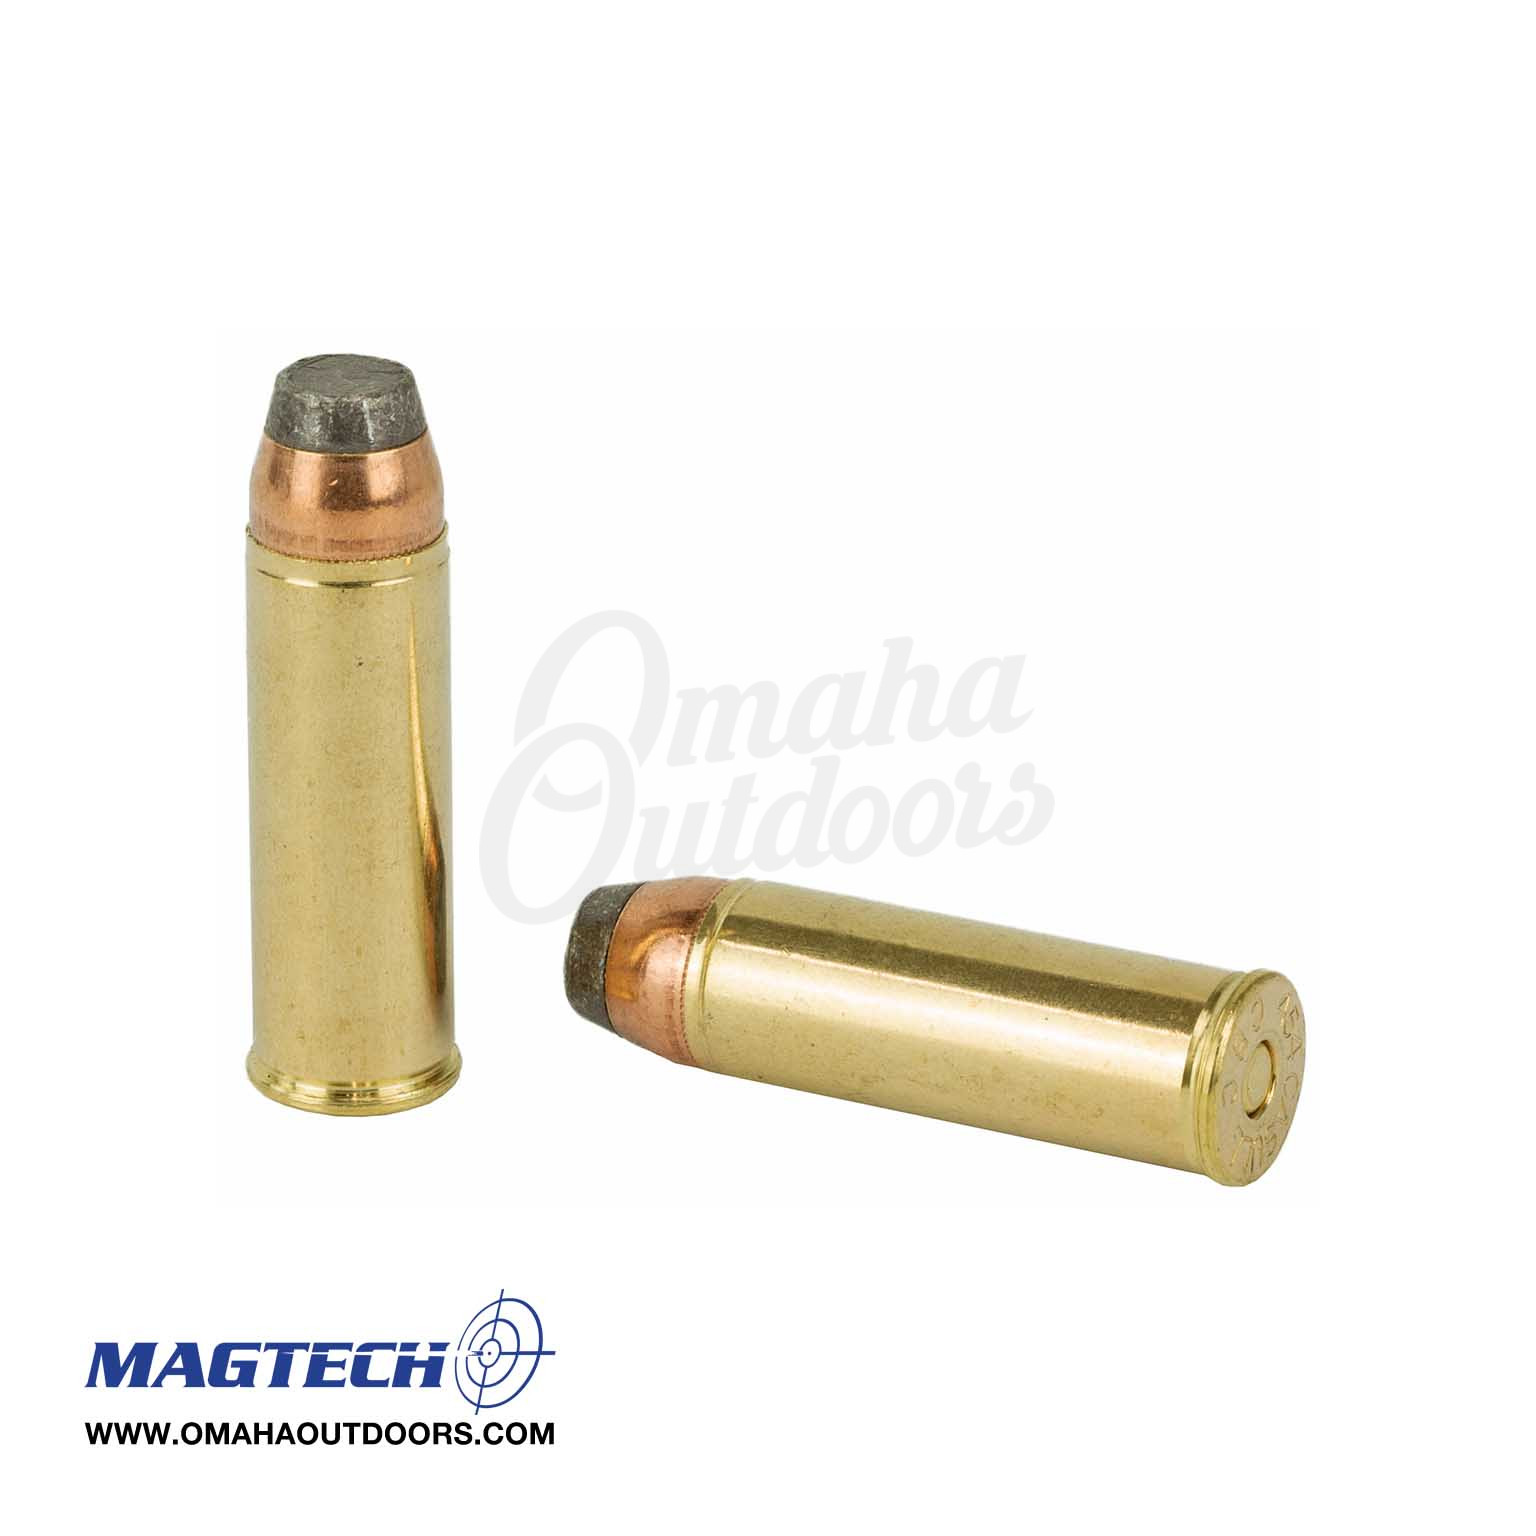 Magtech 454 Casull 260GR FMJ Ammunition 20 Rounds